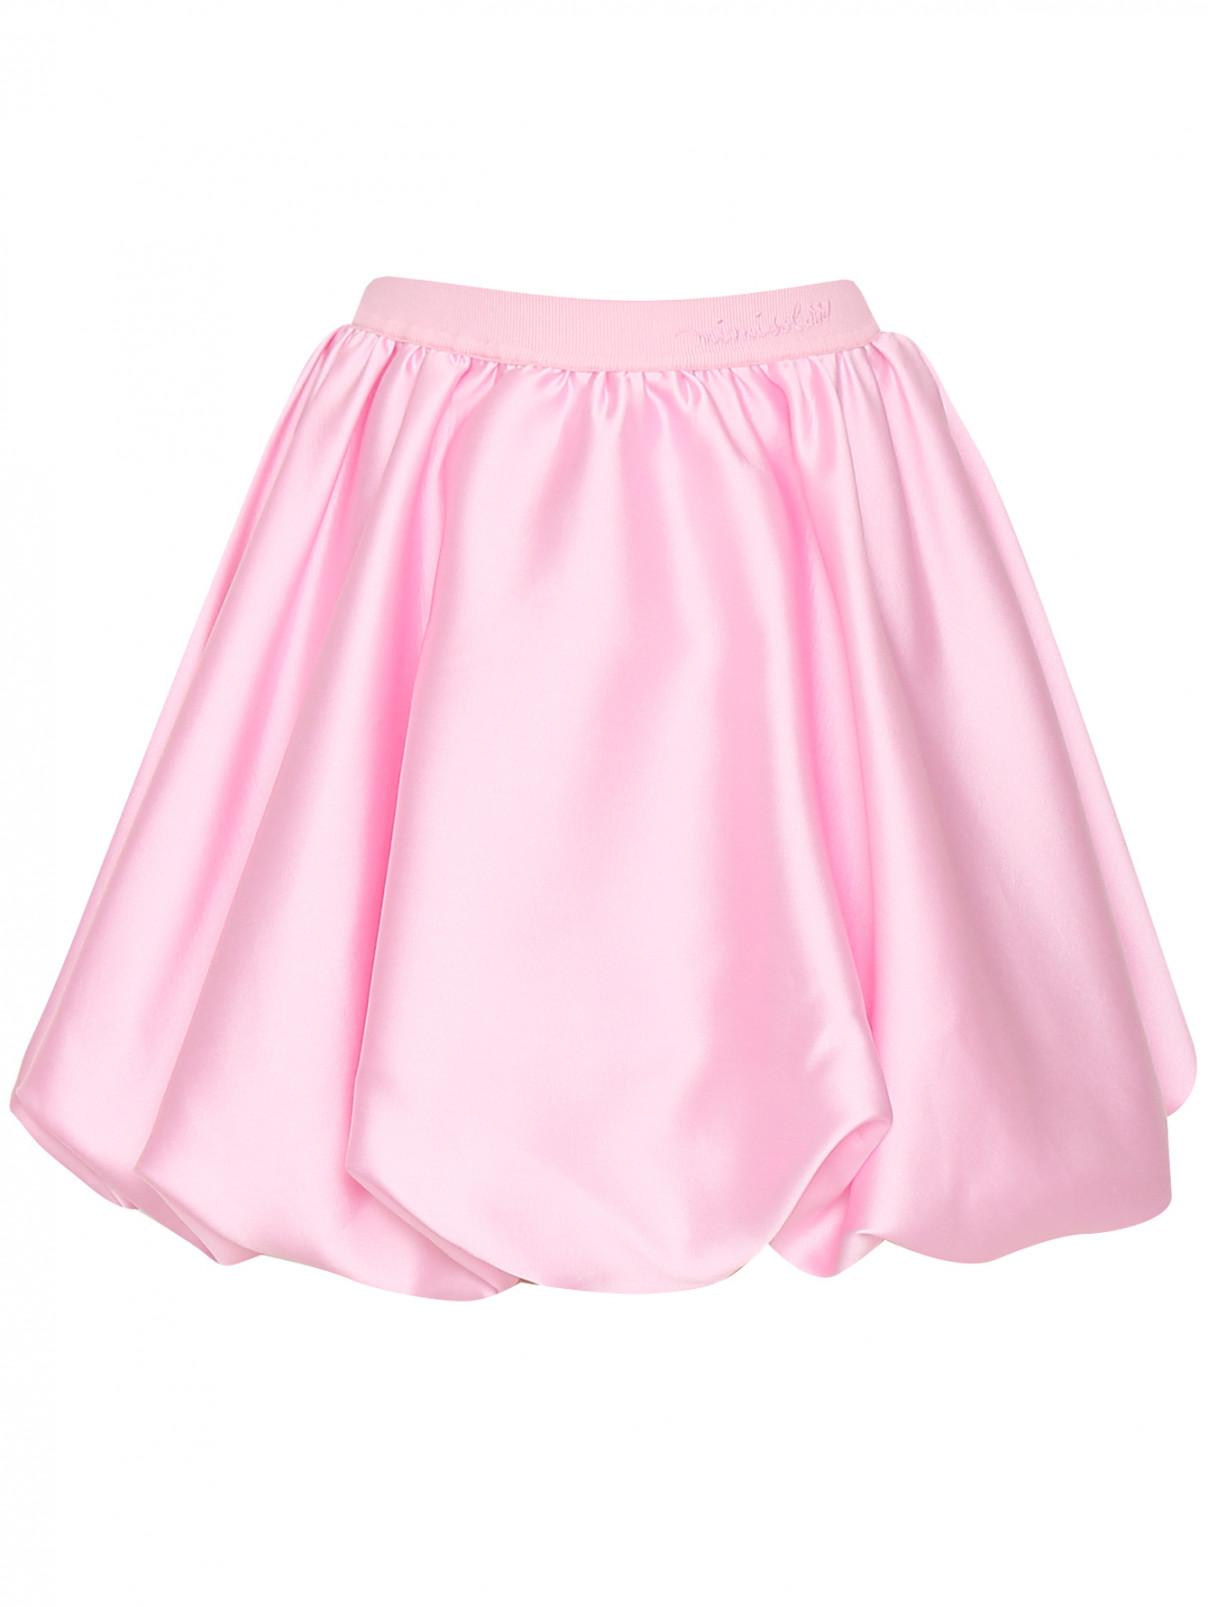 Пышная юбка на резинке MiMiSol  –  Общий вид  – Цвет:  Розовый